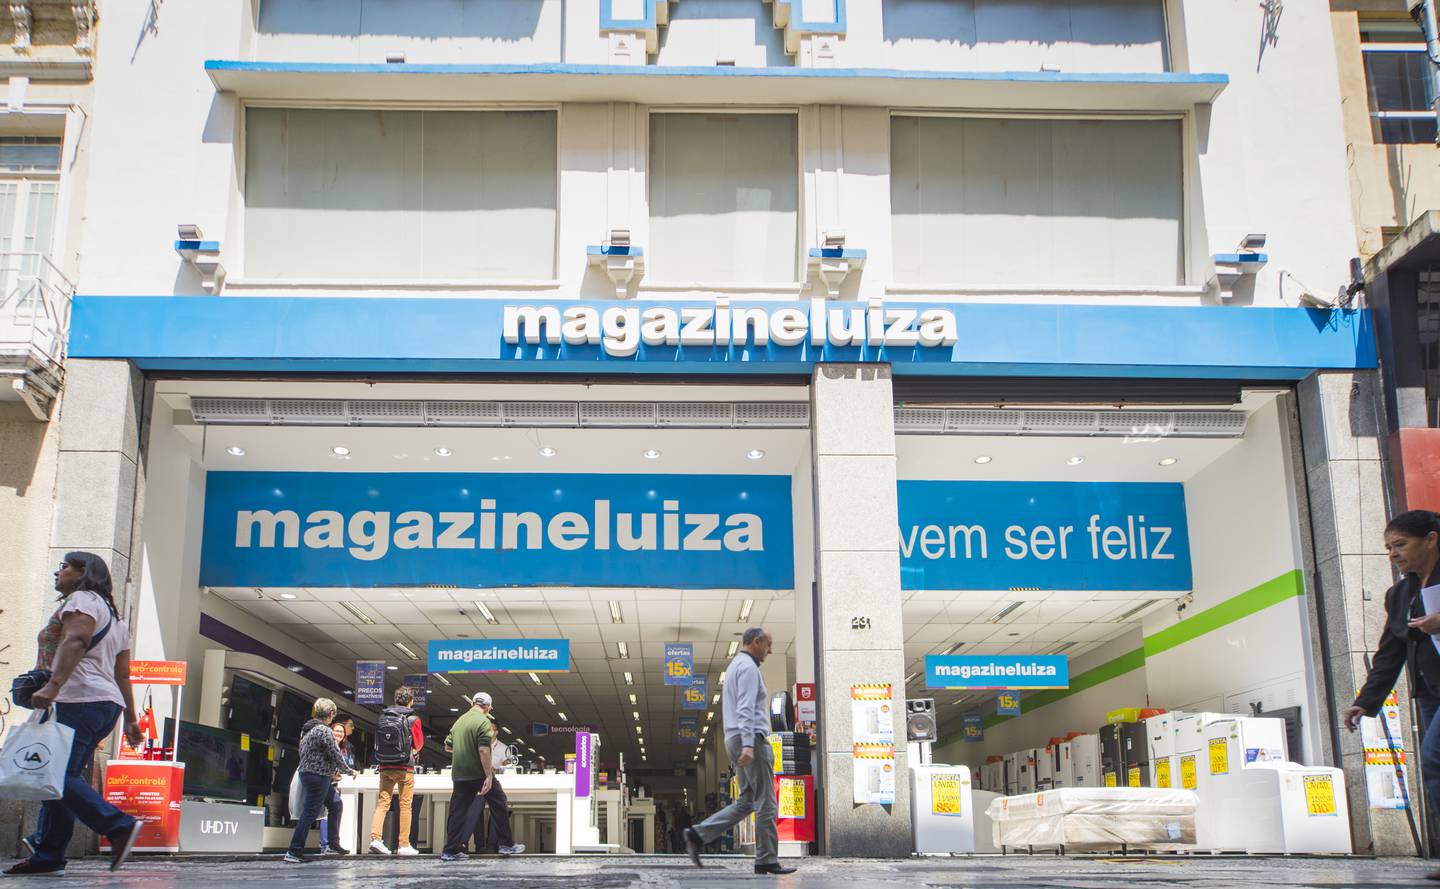 Magazine Luiza's brick-and-mortar store in Brazil.